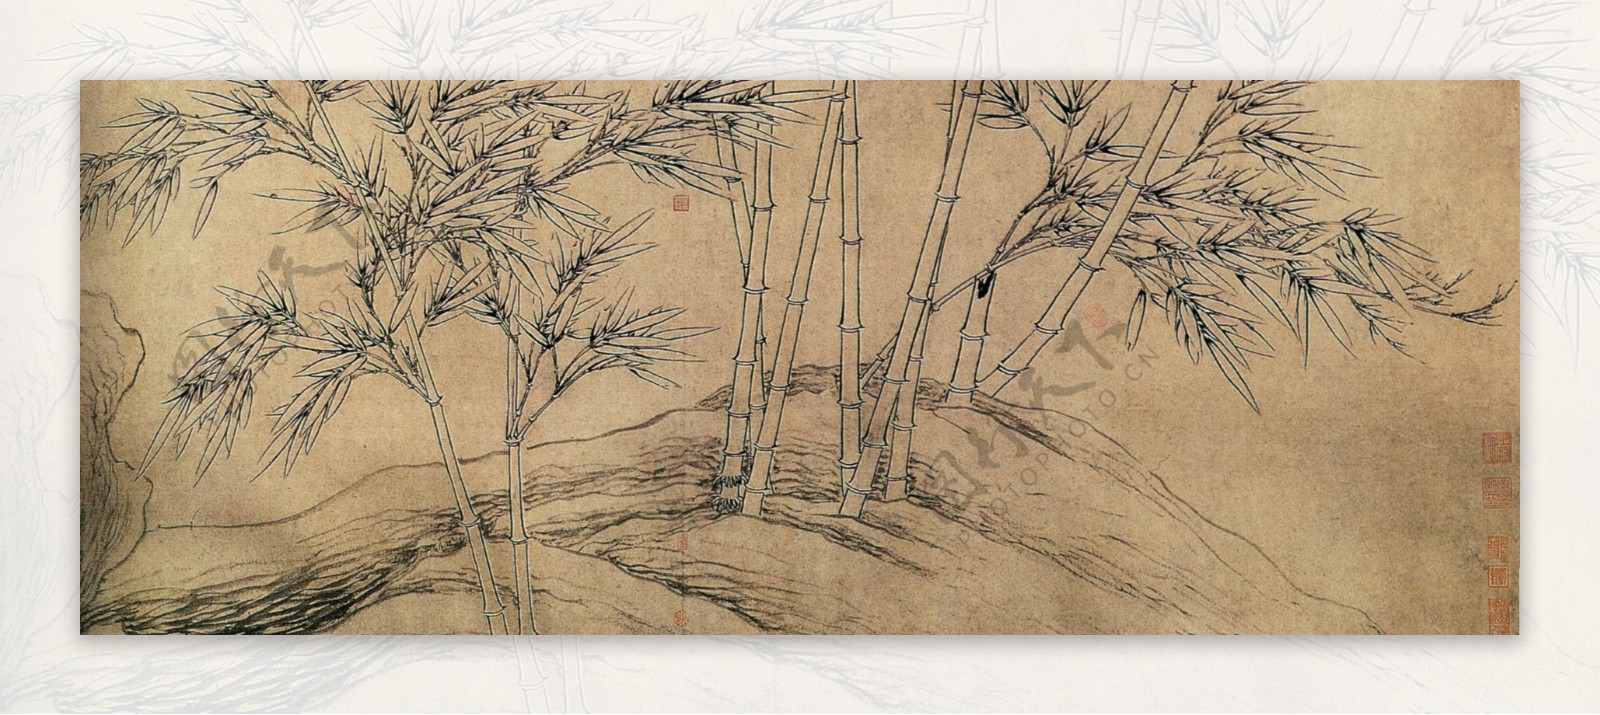 中国花鸟画名家张逊真迹双钩竹及松石图之二